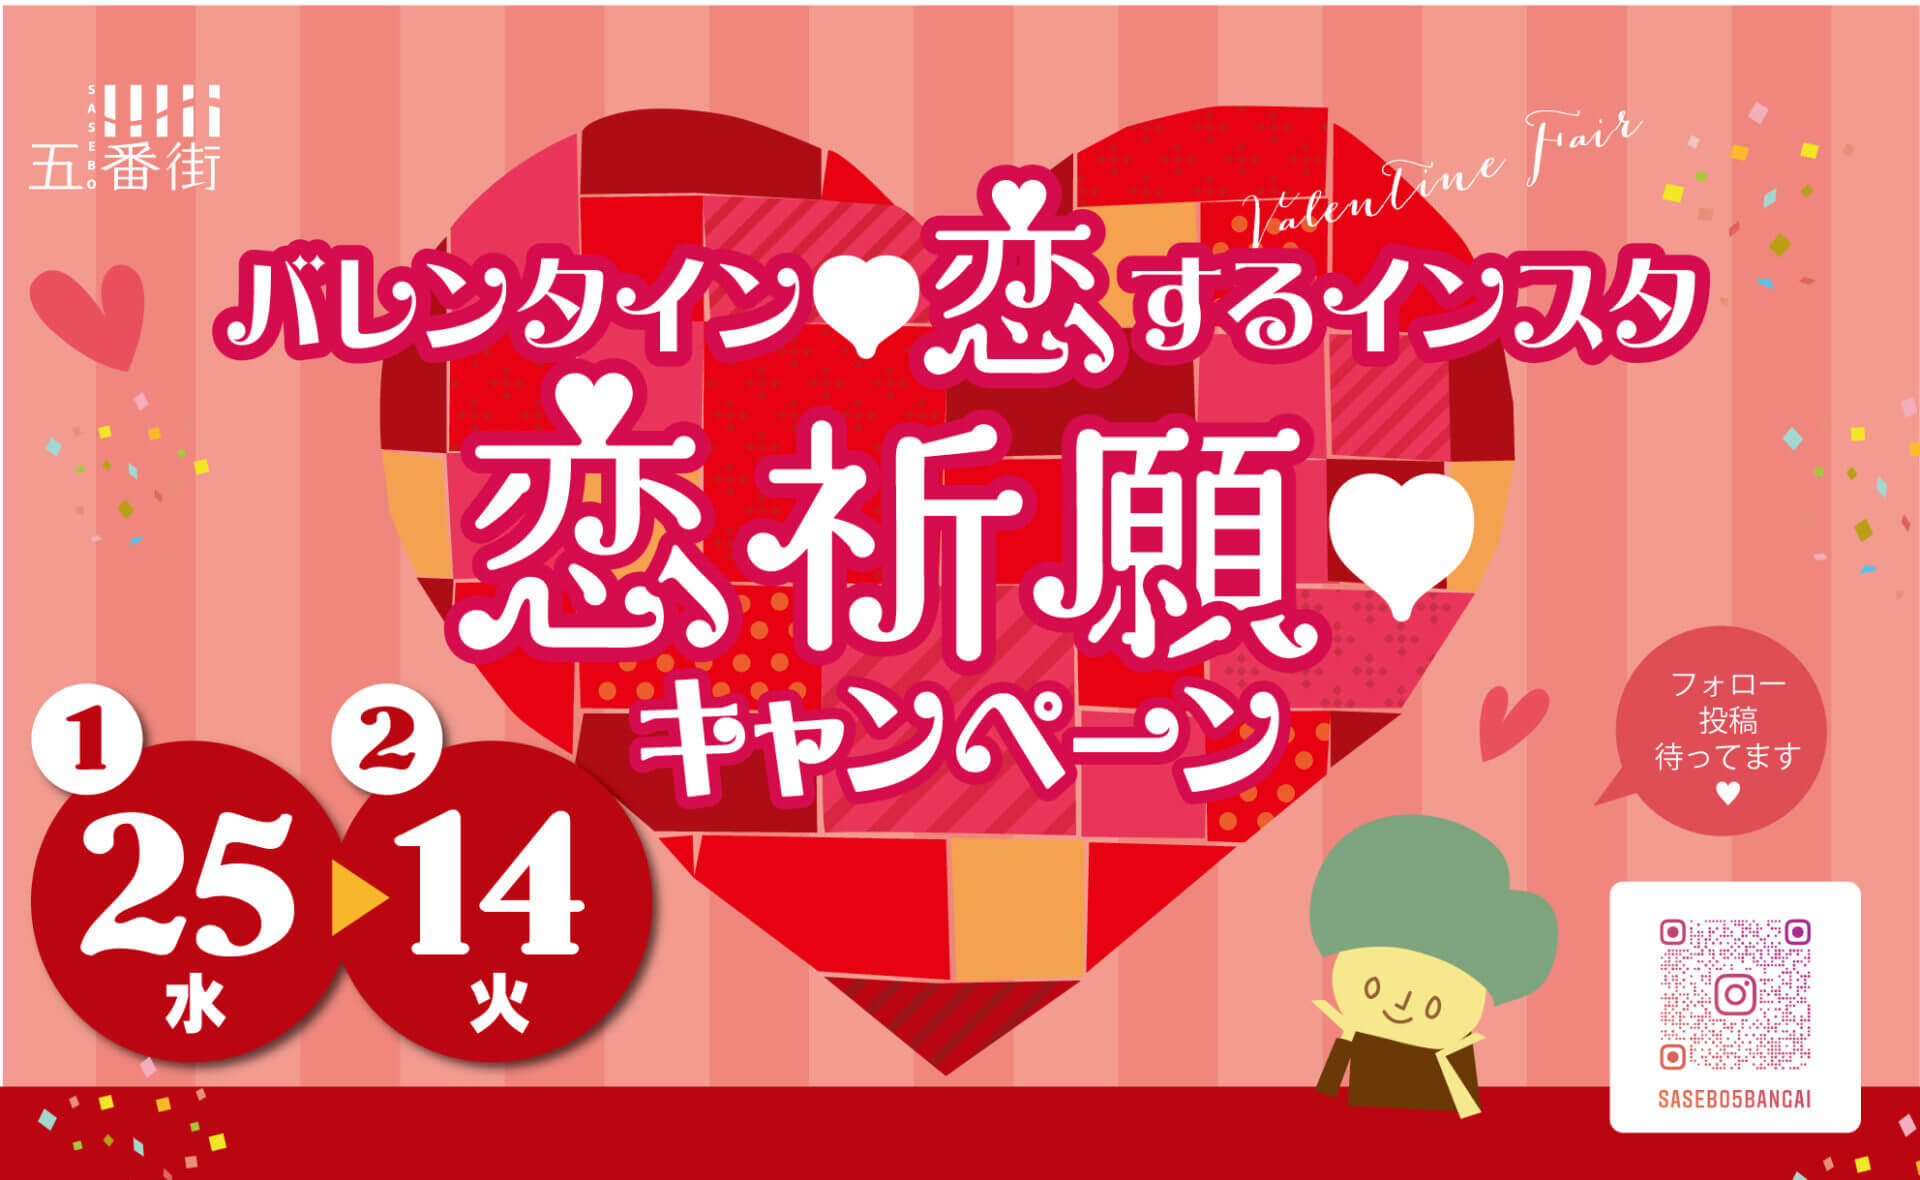 バレンタイン♥恋するインスタ恋祈願♥キャンペーン